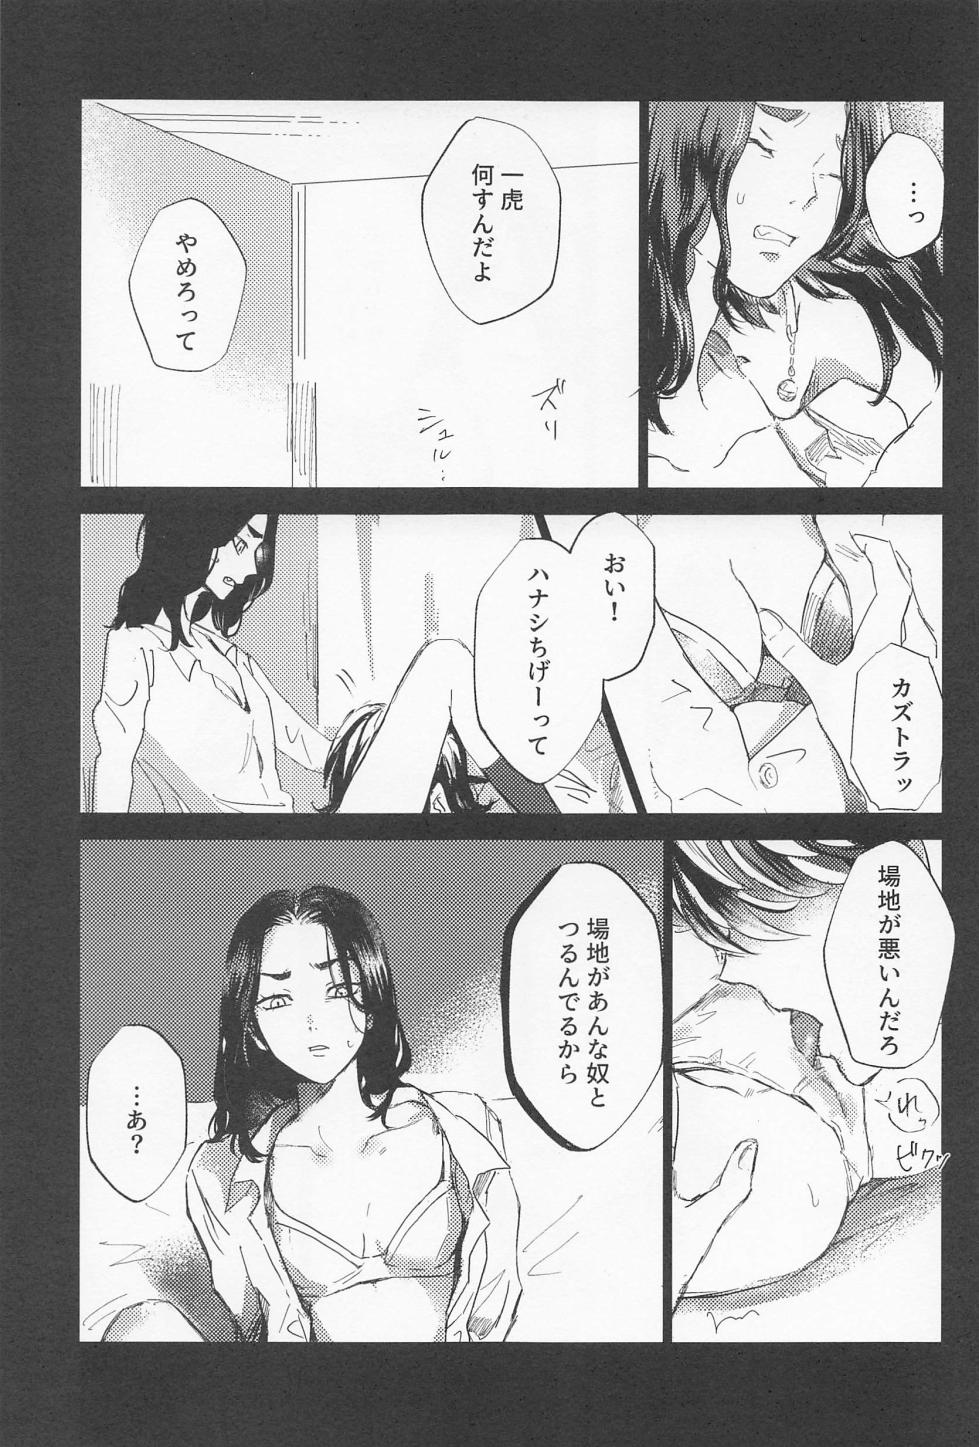 [aihanai] kazutorashusshoshitatteyo (tokyo卍ribenjazu) - Page 24